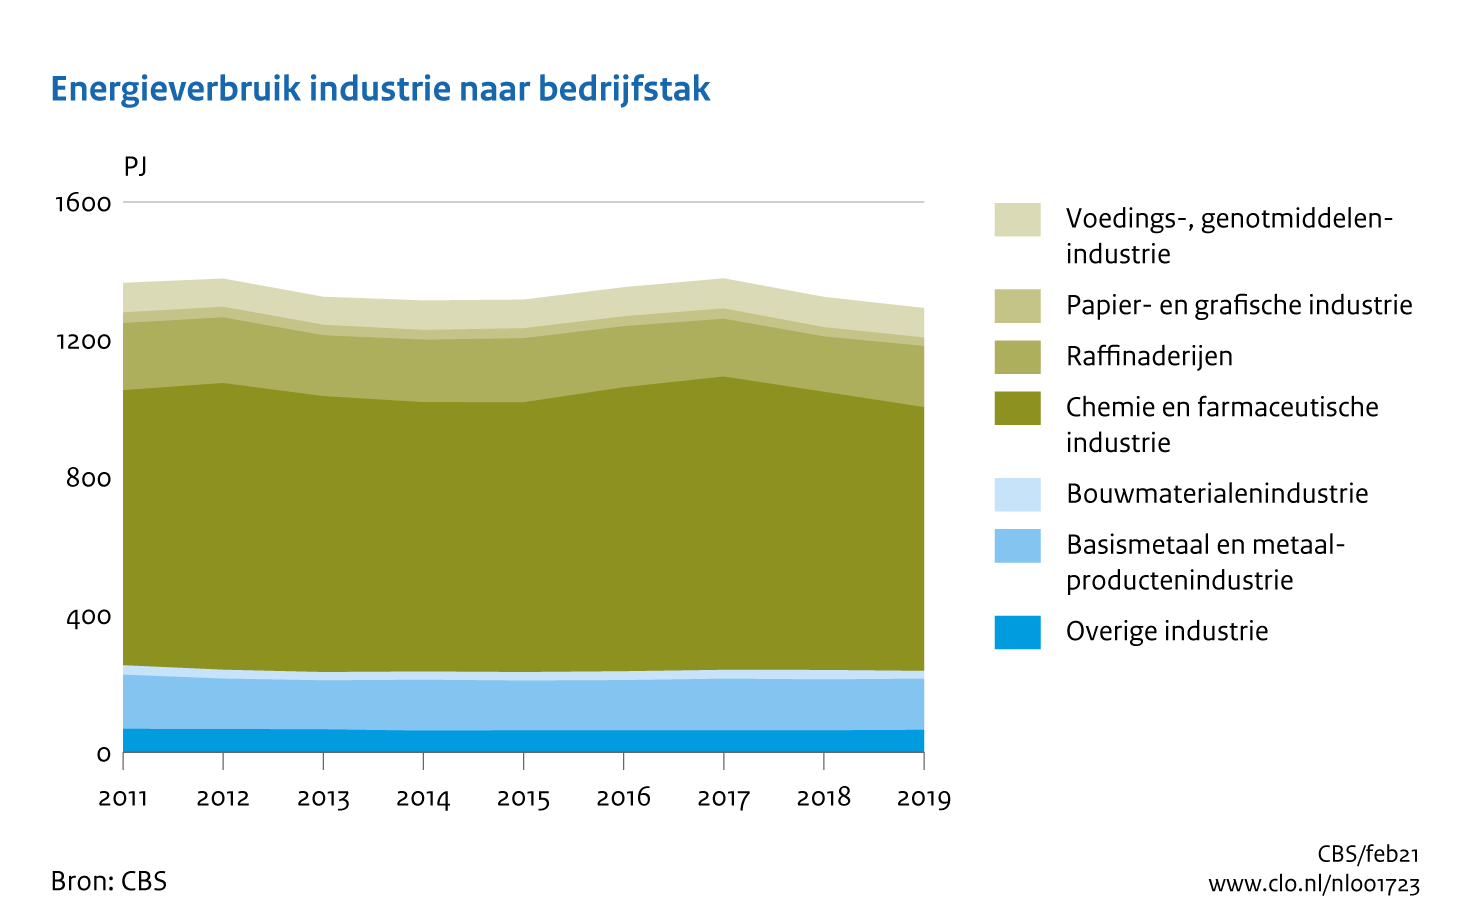 Figuur Energieverbruik industrie naar bedrijfstak 2011-2019. In de rest van de tekst wordt deze figuur uitgebreider uitgelegd.